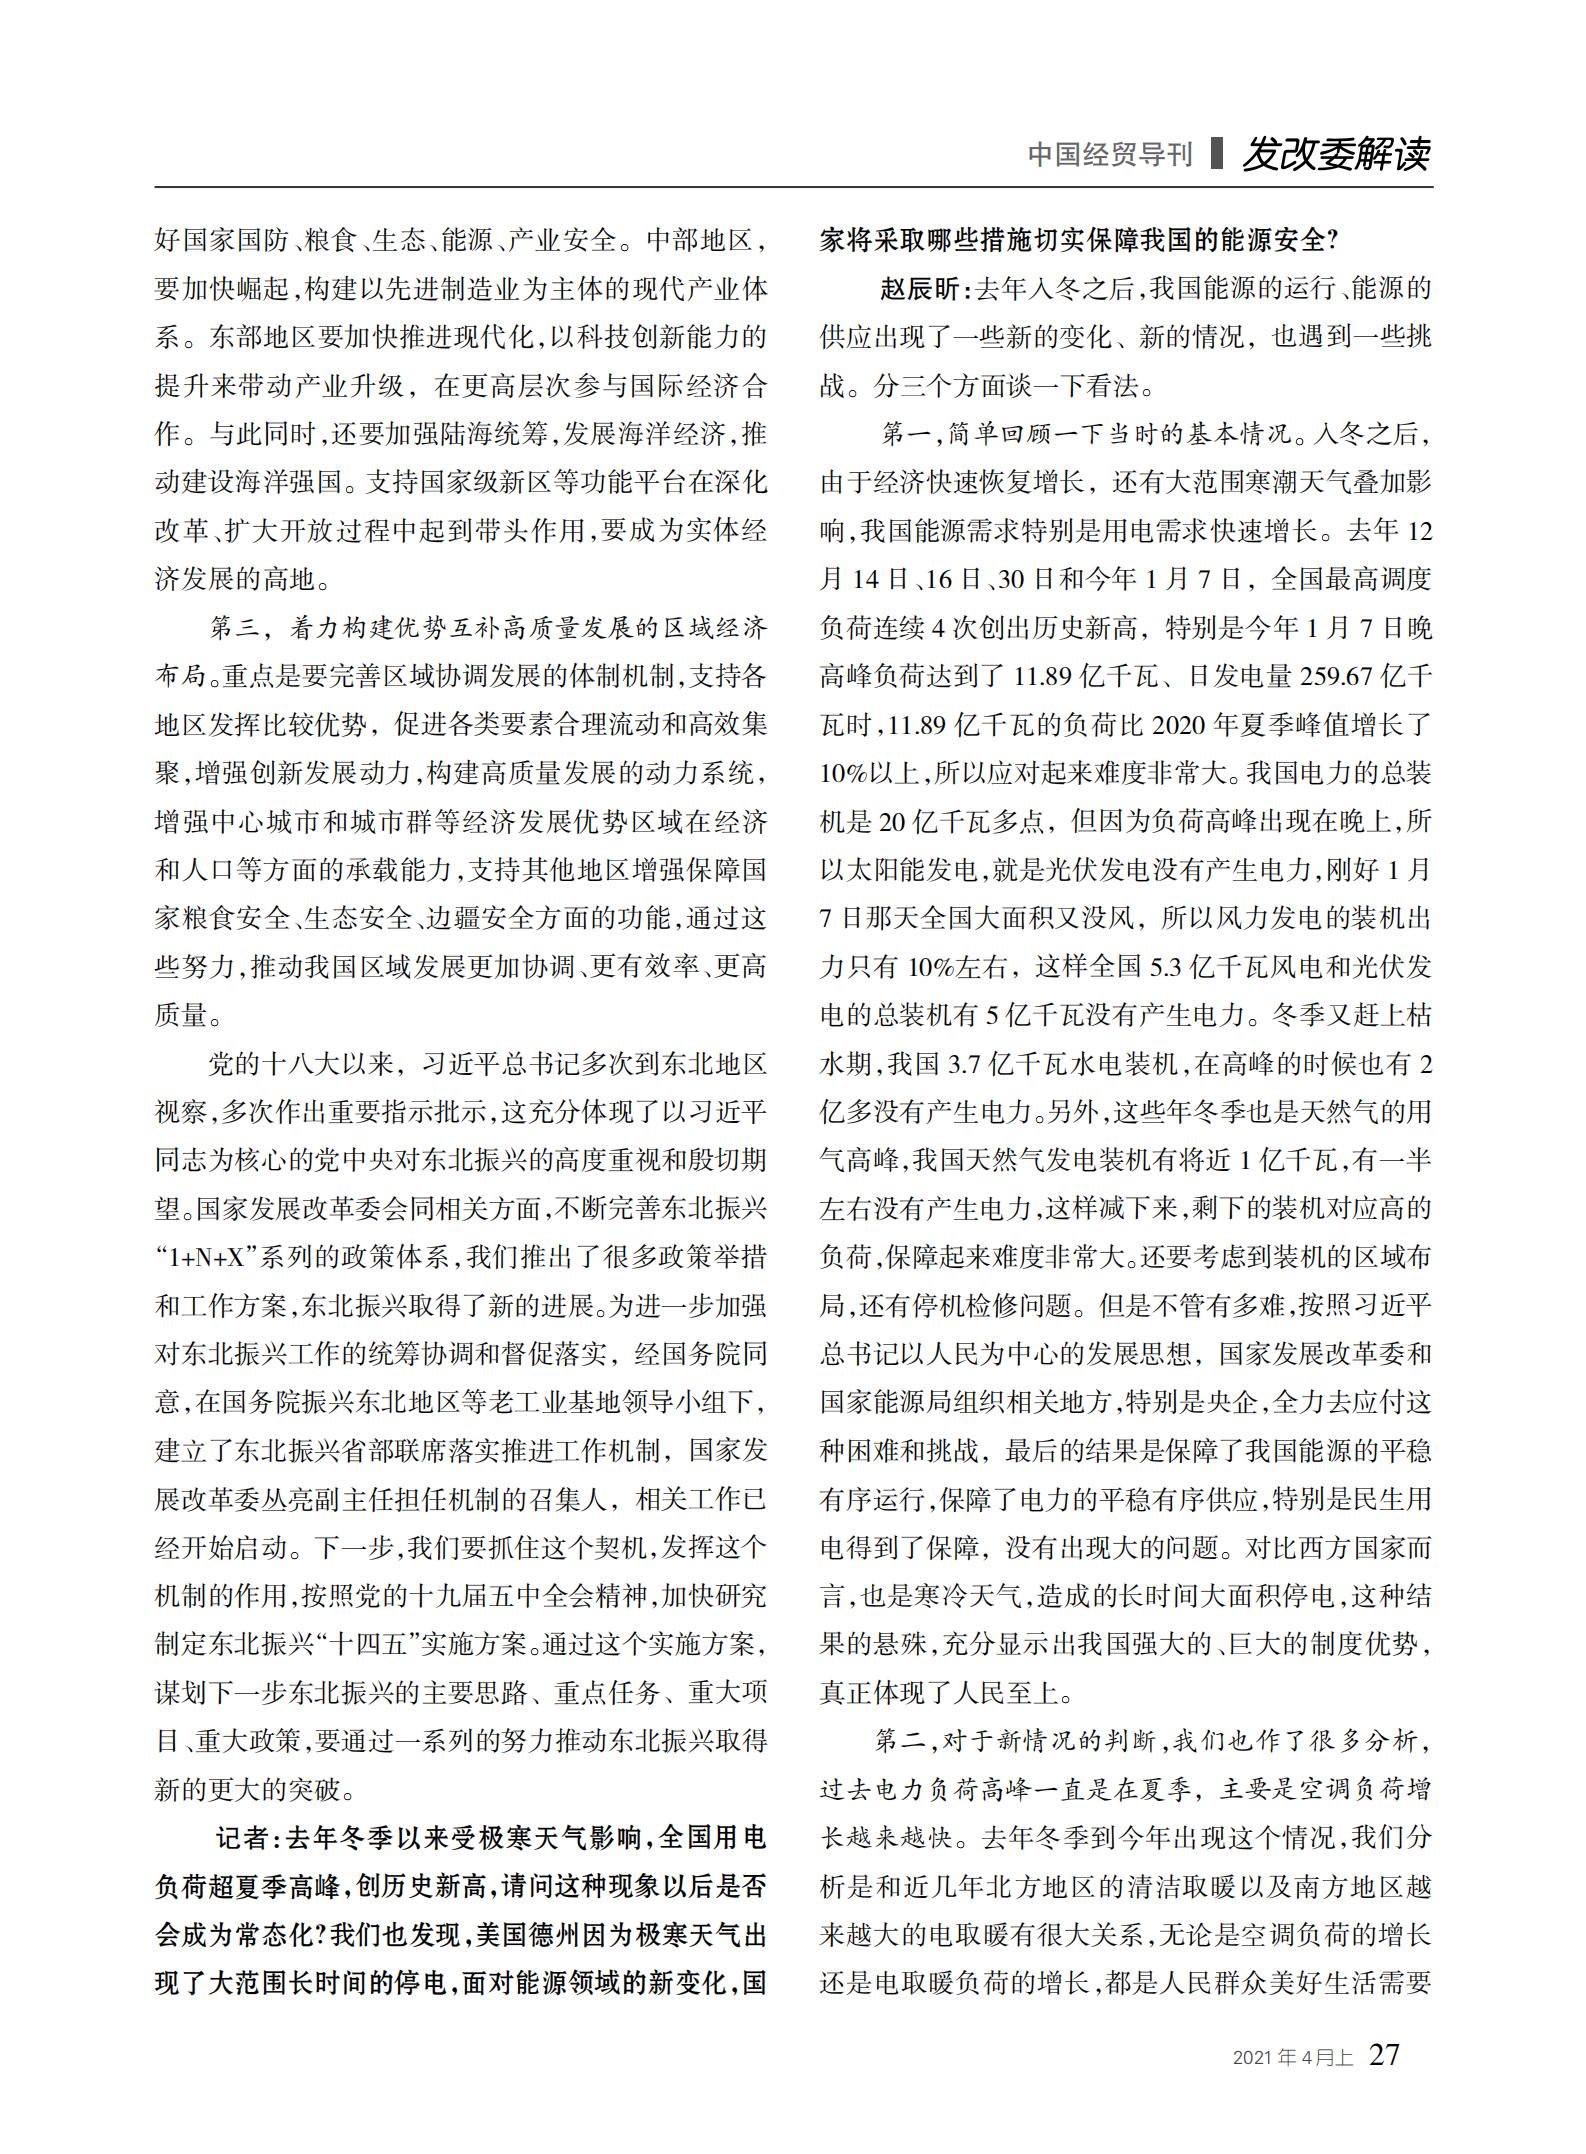 中国经贸导刊2021-4上印刷_26.jpg